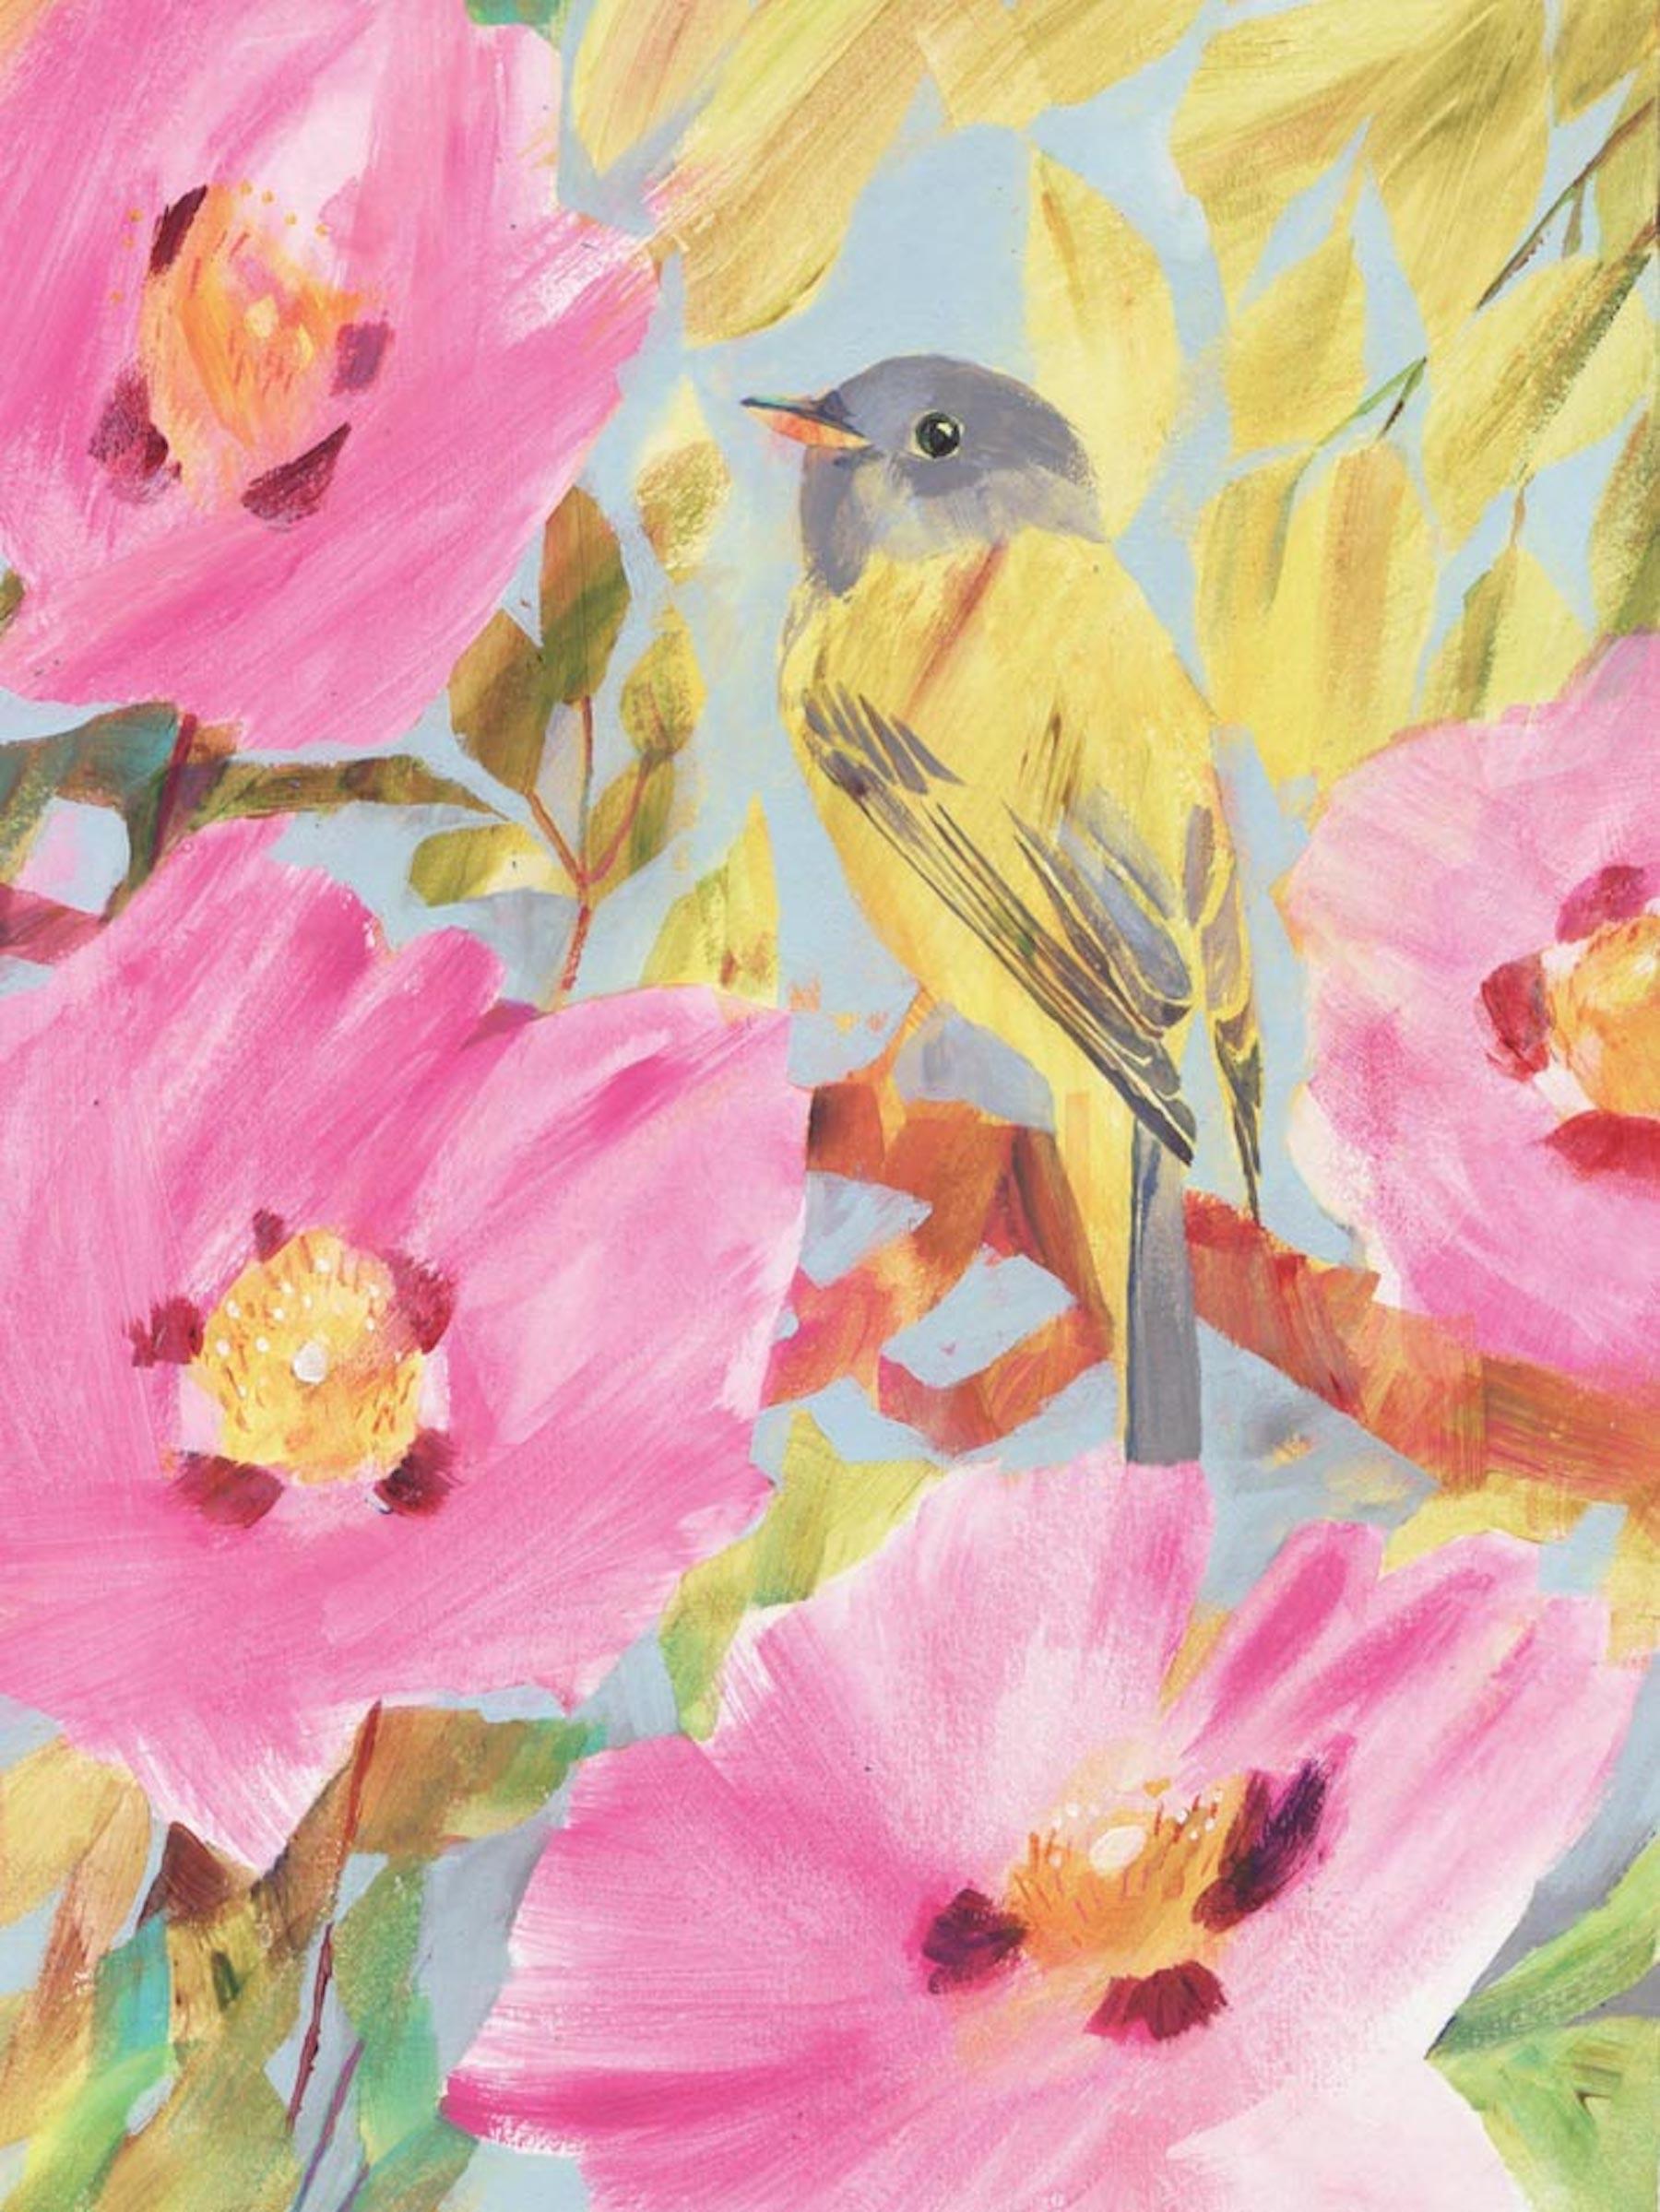 Fliegenfänger Kanarienvogel [2017]
Signiert von der Künstlerin
Acryl auf Karton
Bildgröße: H:24 cm x B:18 cm
Rahmengröße: H:39 cm x B:32 cm x T:3cm
Bitte beachten Sie, dass die Insitu-Bilder lediglich einen Hinweis darauf geben, wie ein Stück